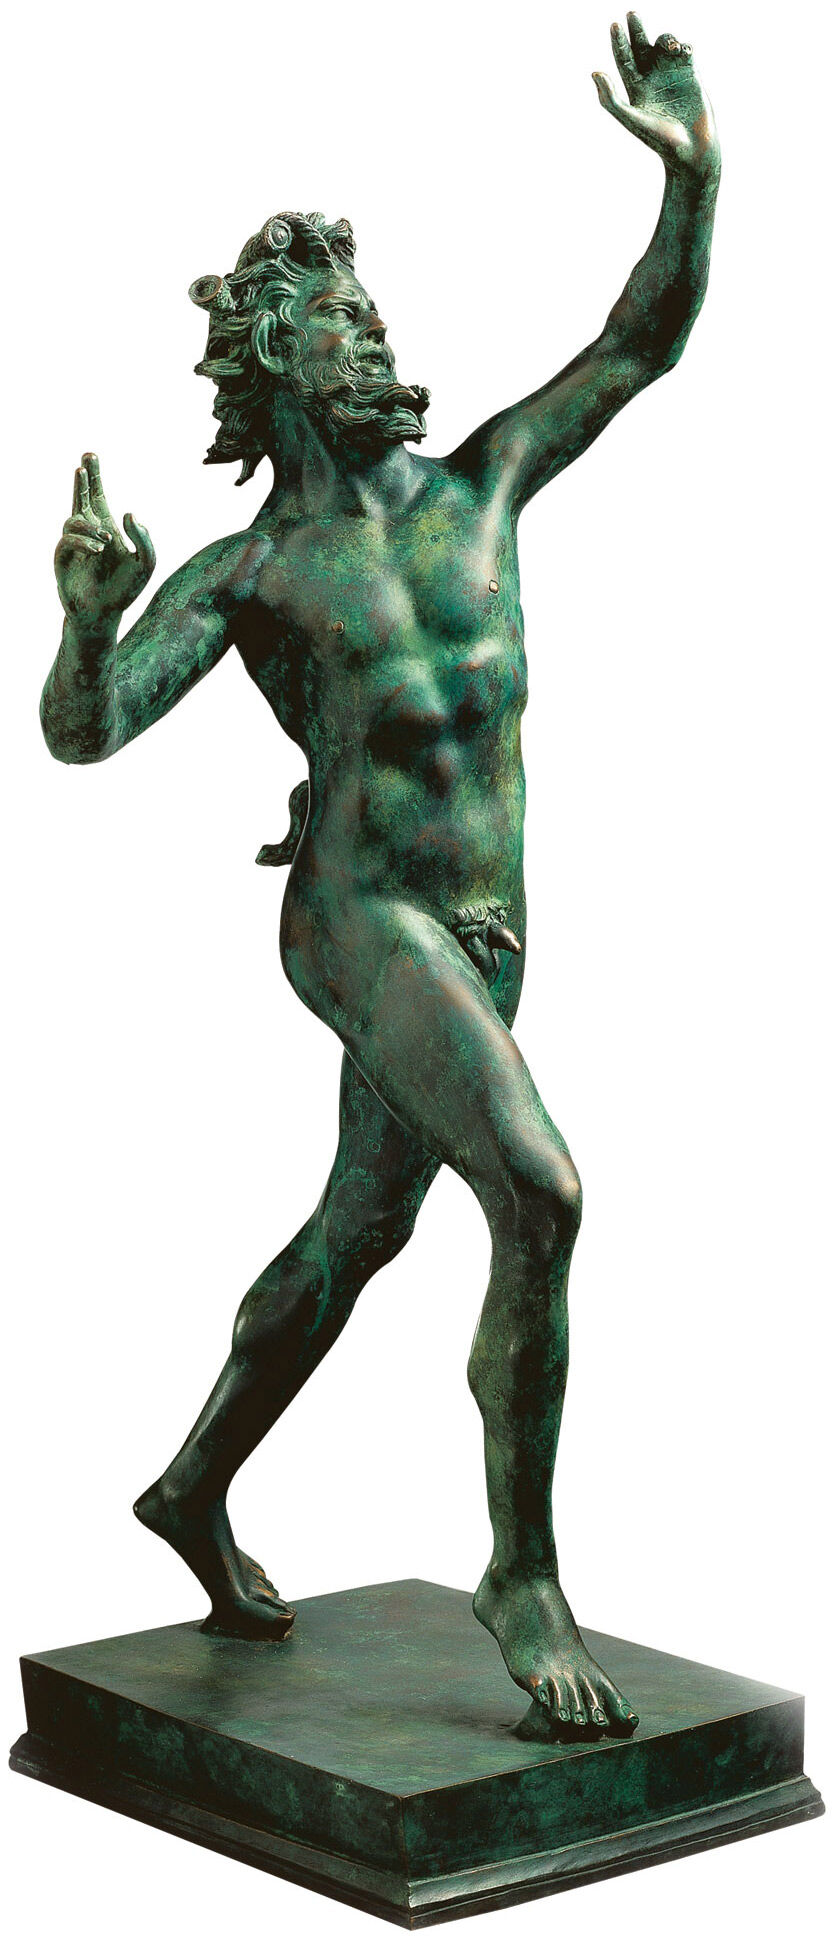 Sculpture "Fauno Danzante of Pompeii" (original size), bonded bronze version